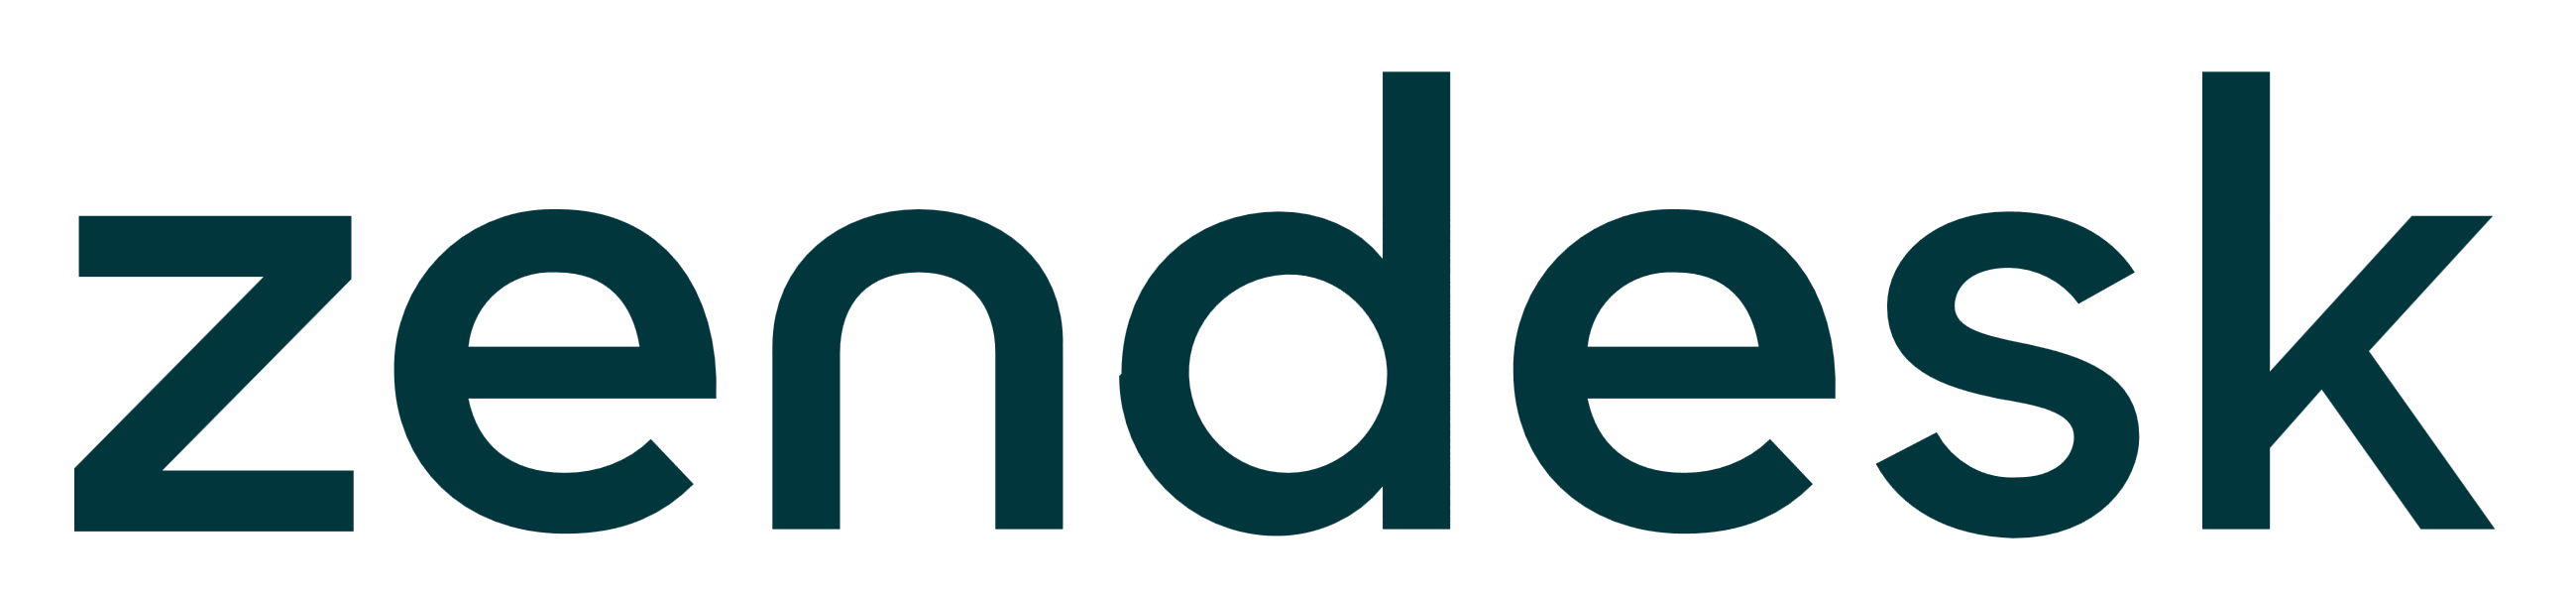 Logo - Zendesk Vector PNG